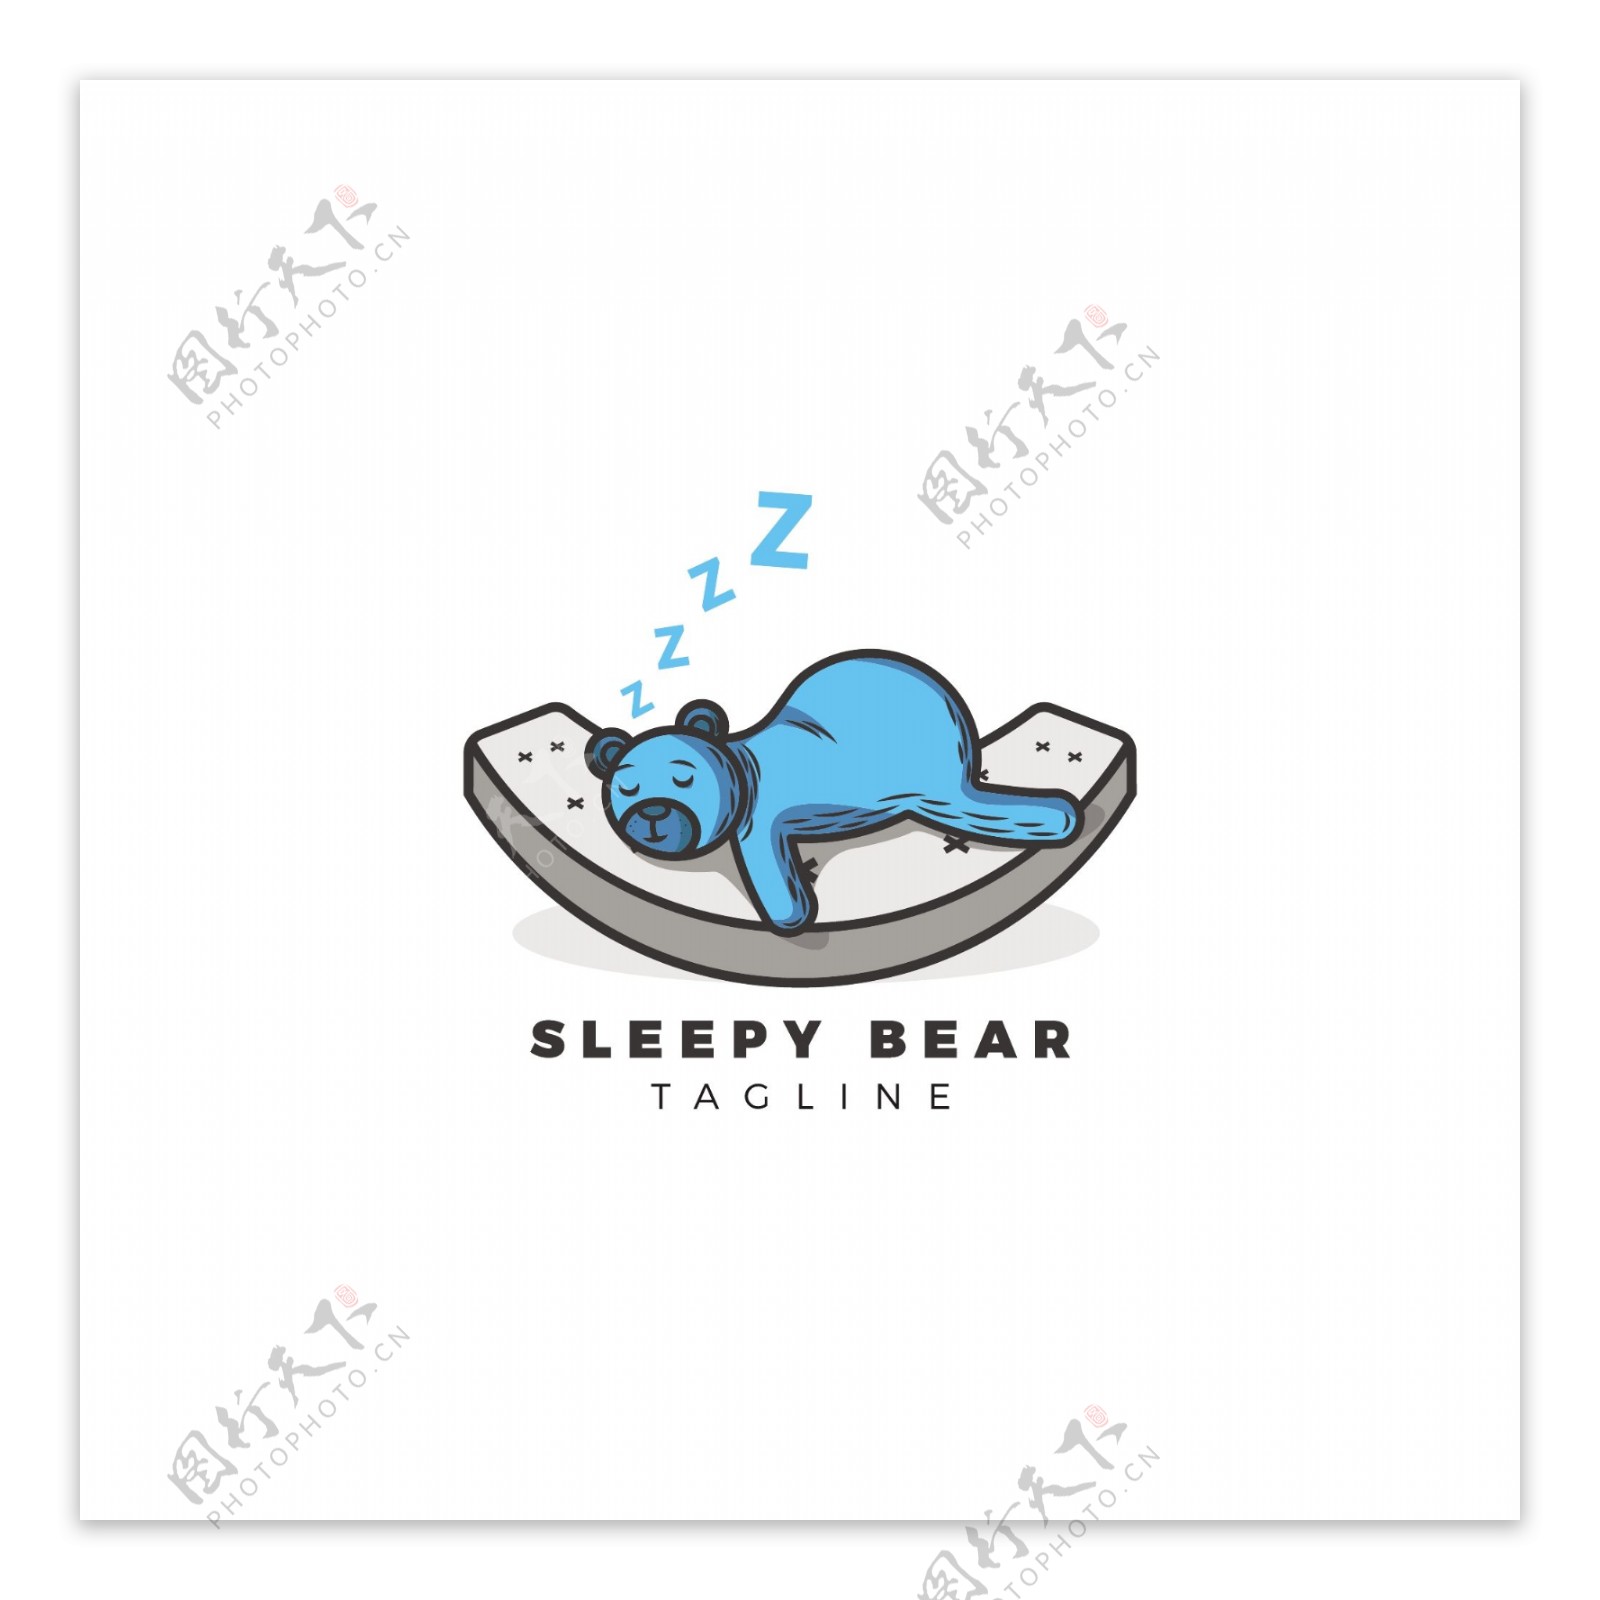 睡觉的蓝色熊插图矢量素材